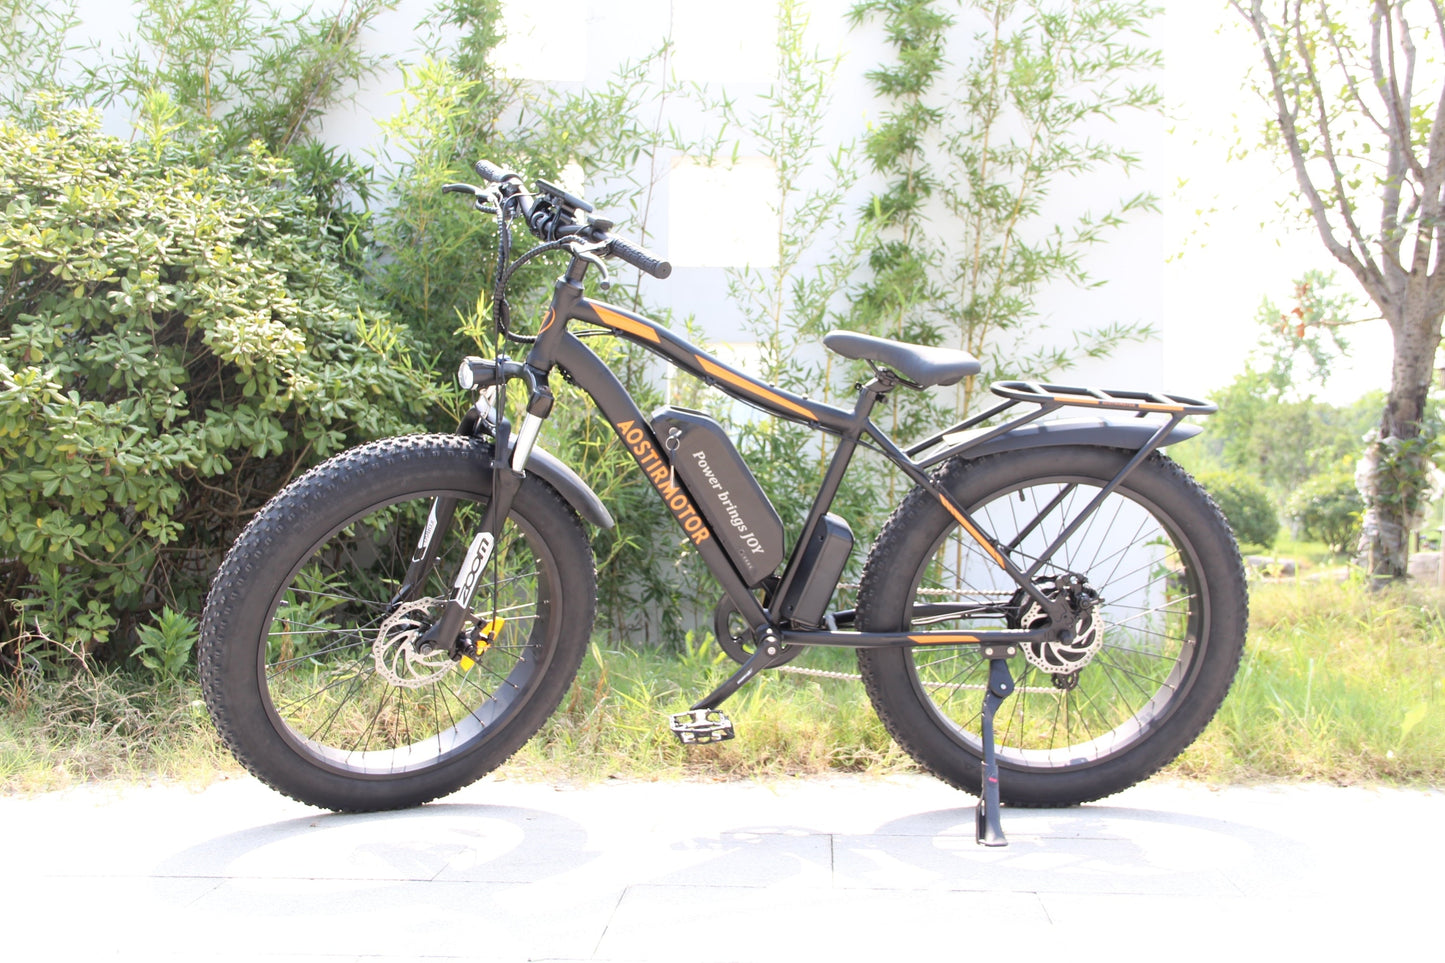 GTRACING x AOSTIMOTOR 750W Electric Mountain Bike S07